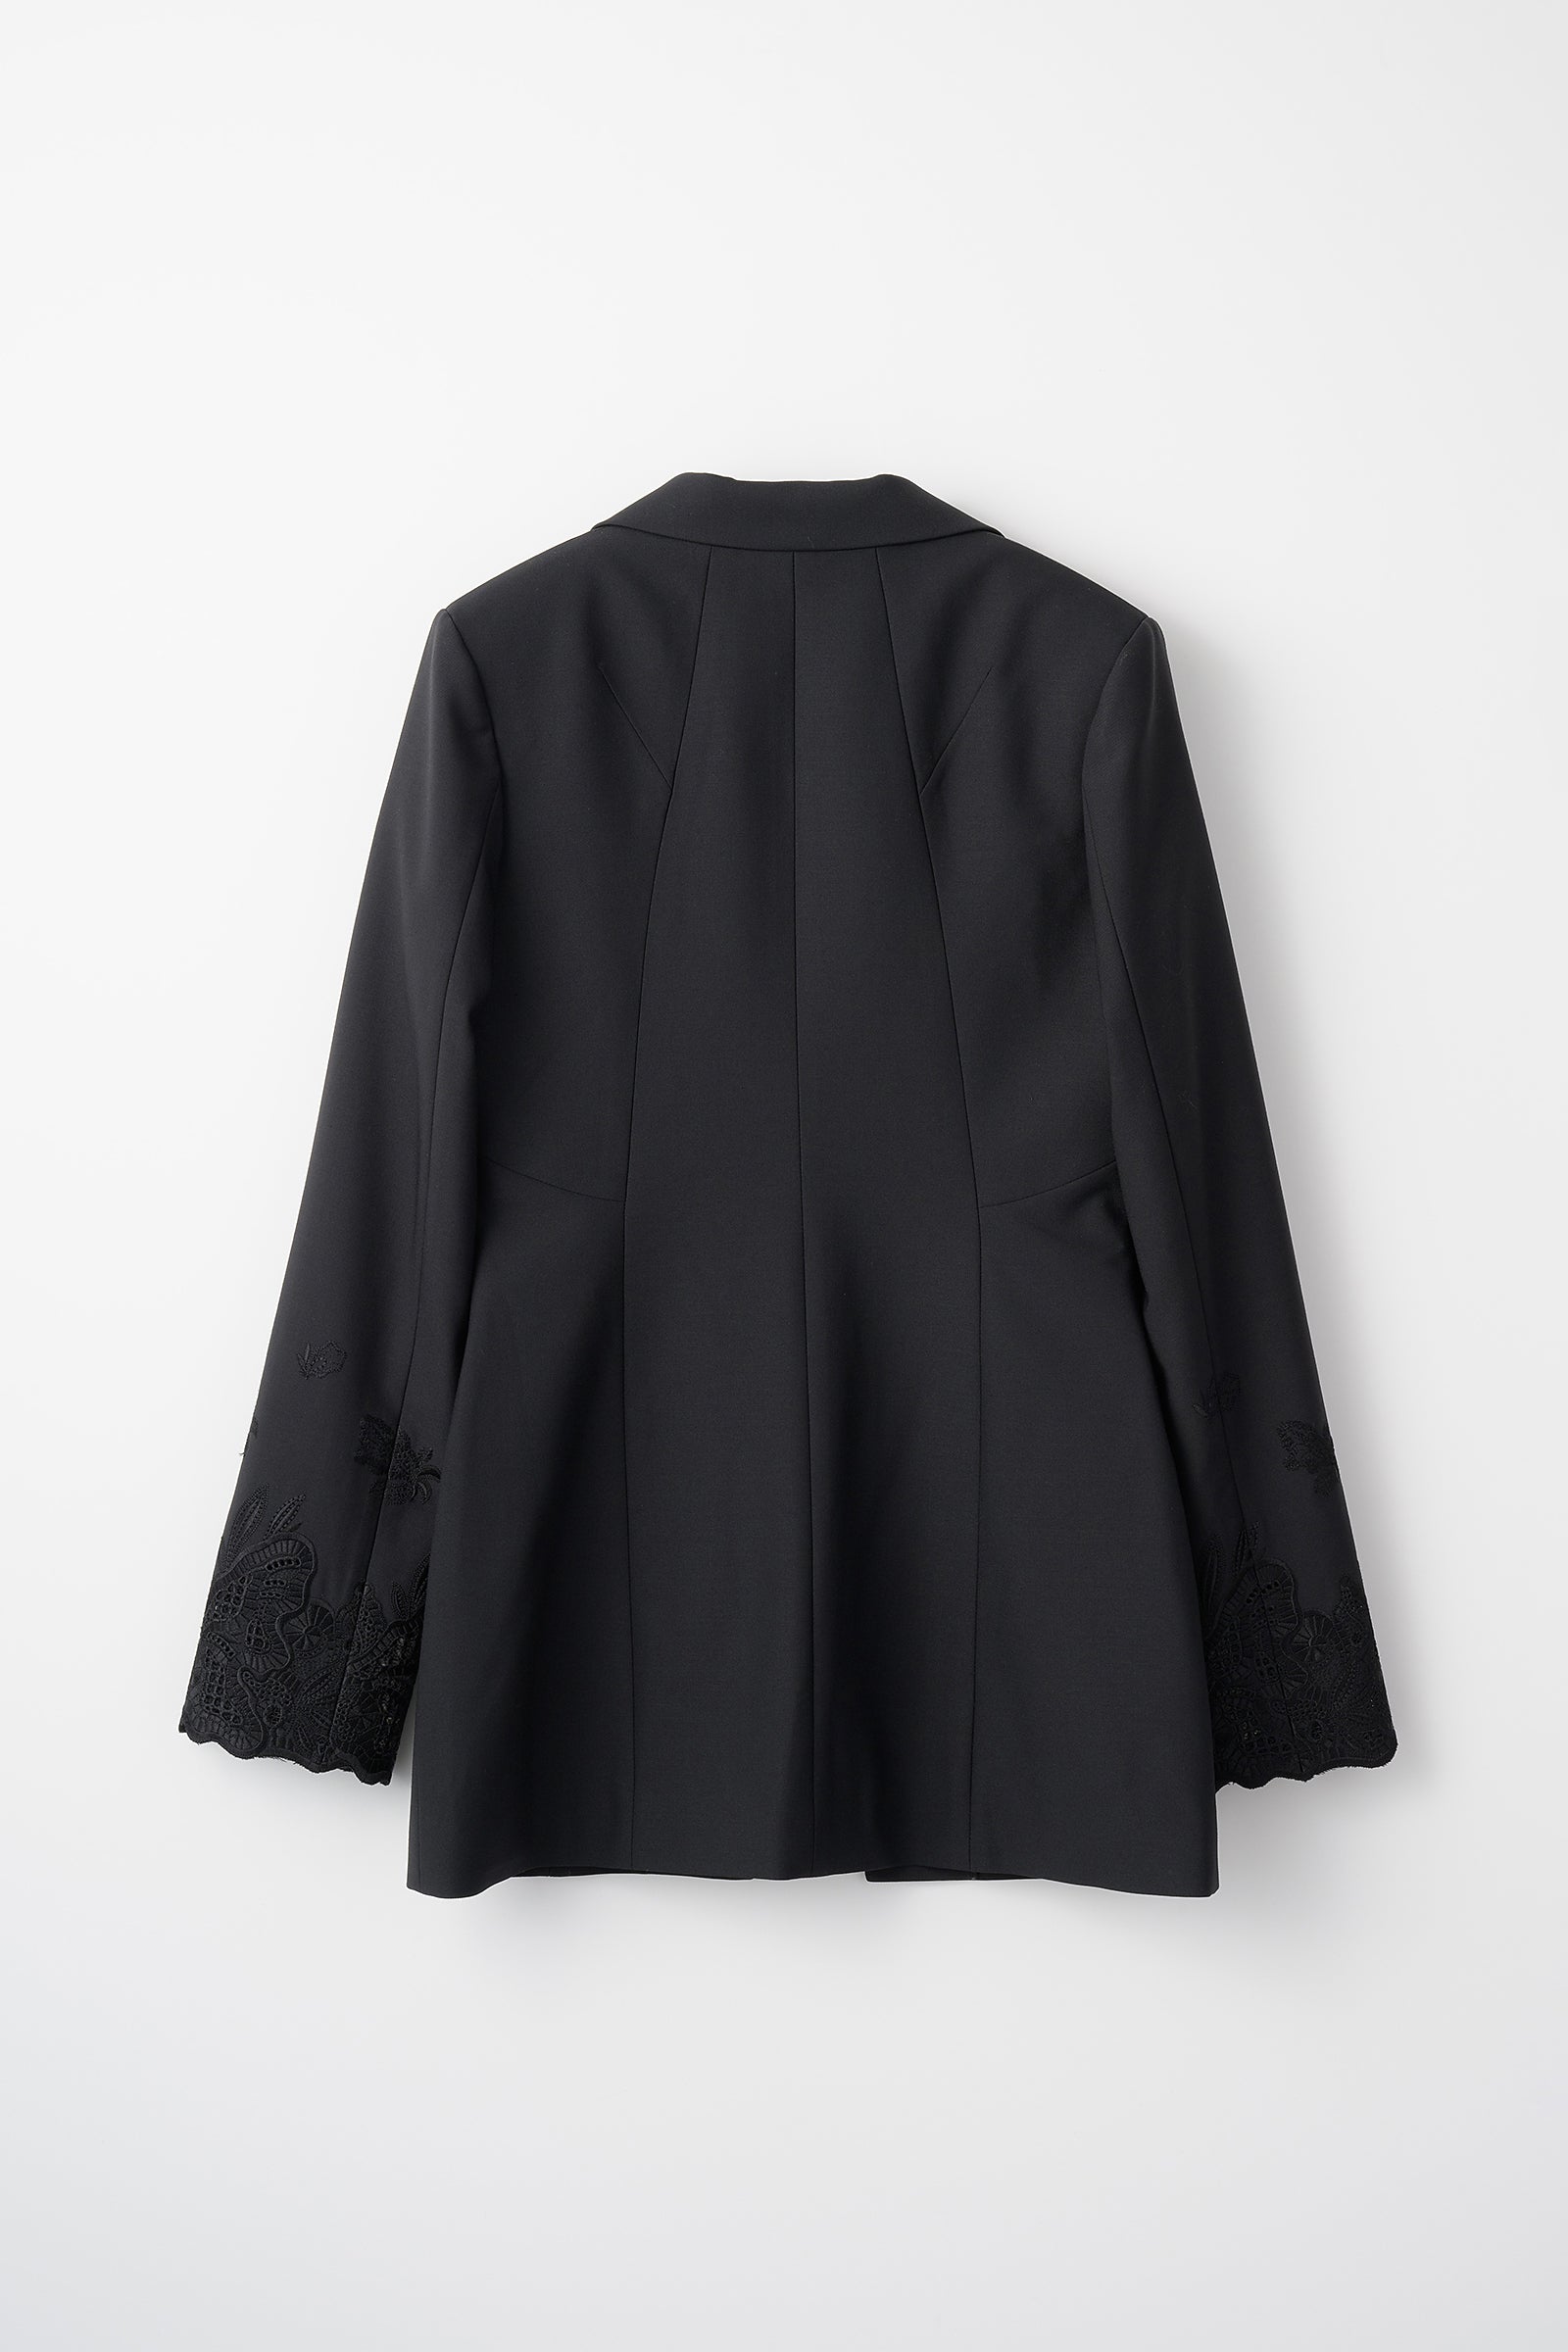 Morpho embroidery jacket (Black)